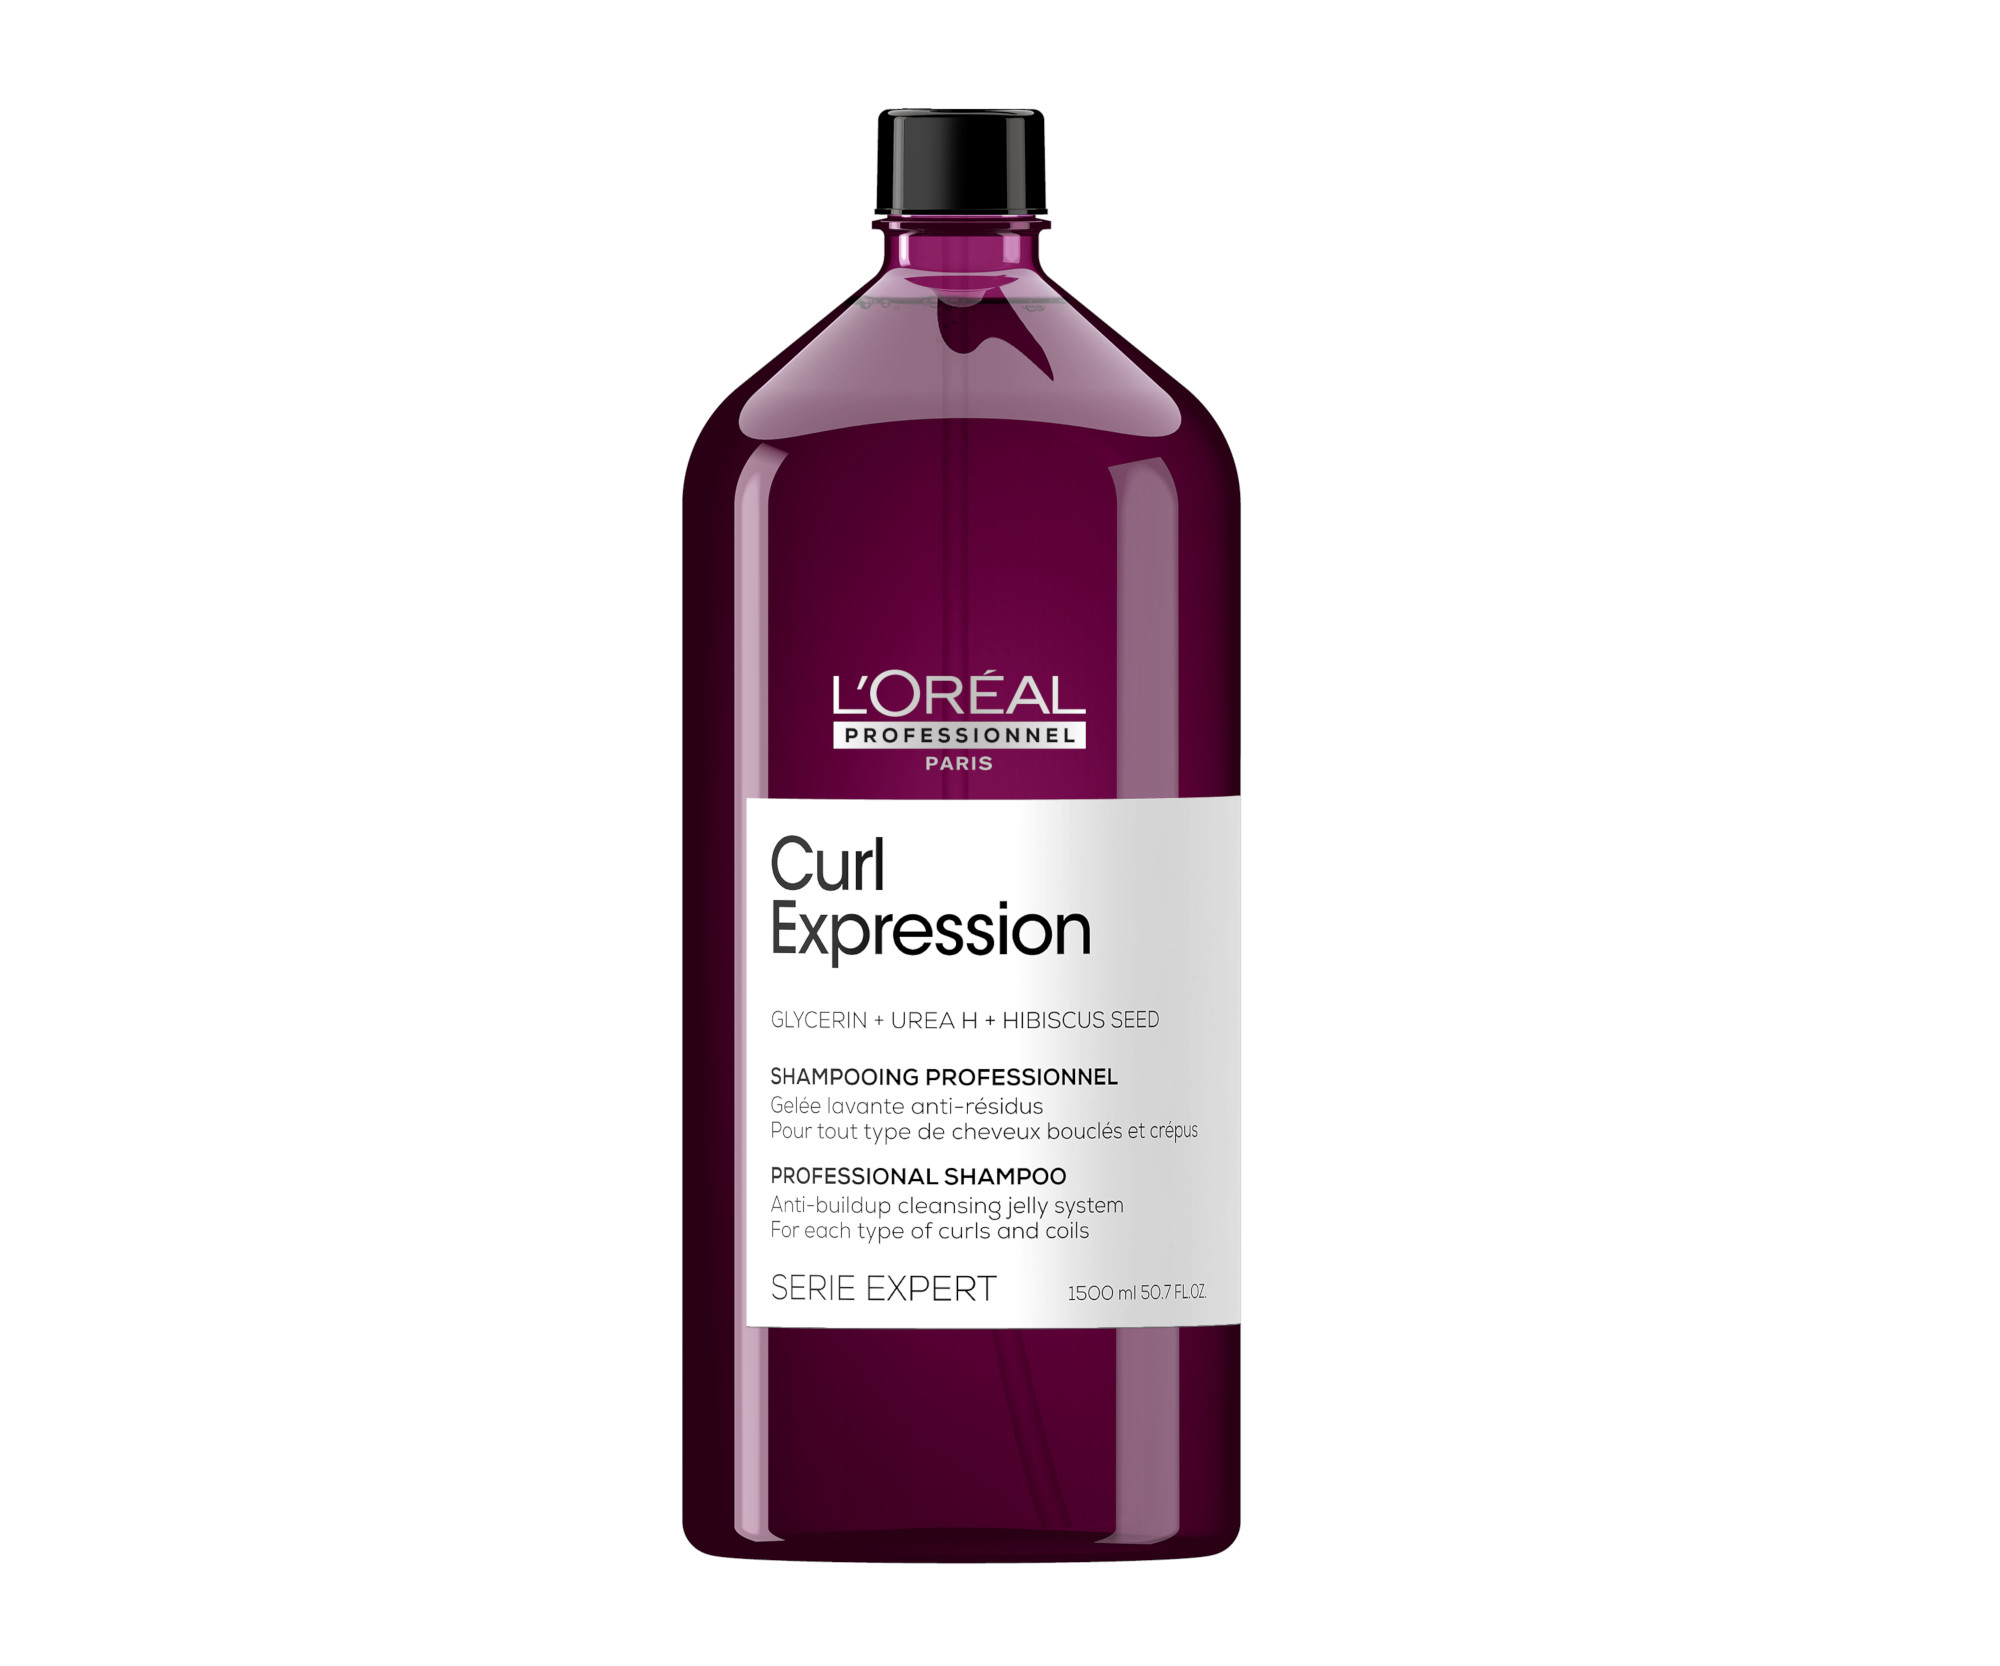 Čisticí šampon pro vlnité a kudrnaté vlasy Loréal Professionnel Curl Expression - 1500 ml - L’Oréal Professionnel + DÁREK ZDARMA